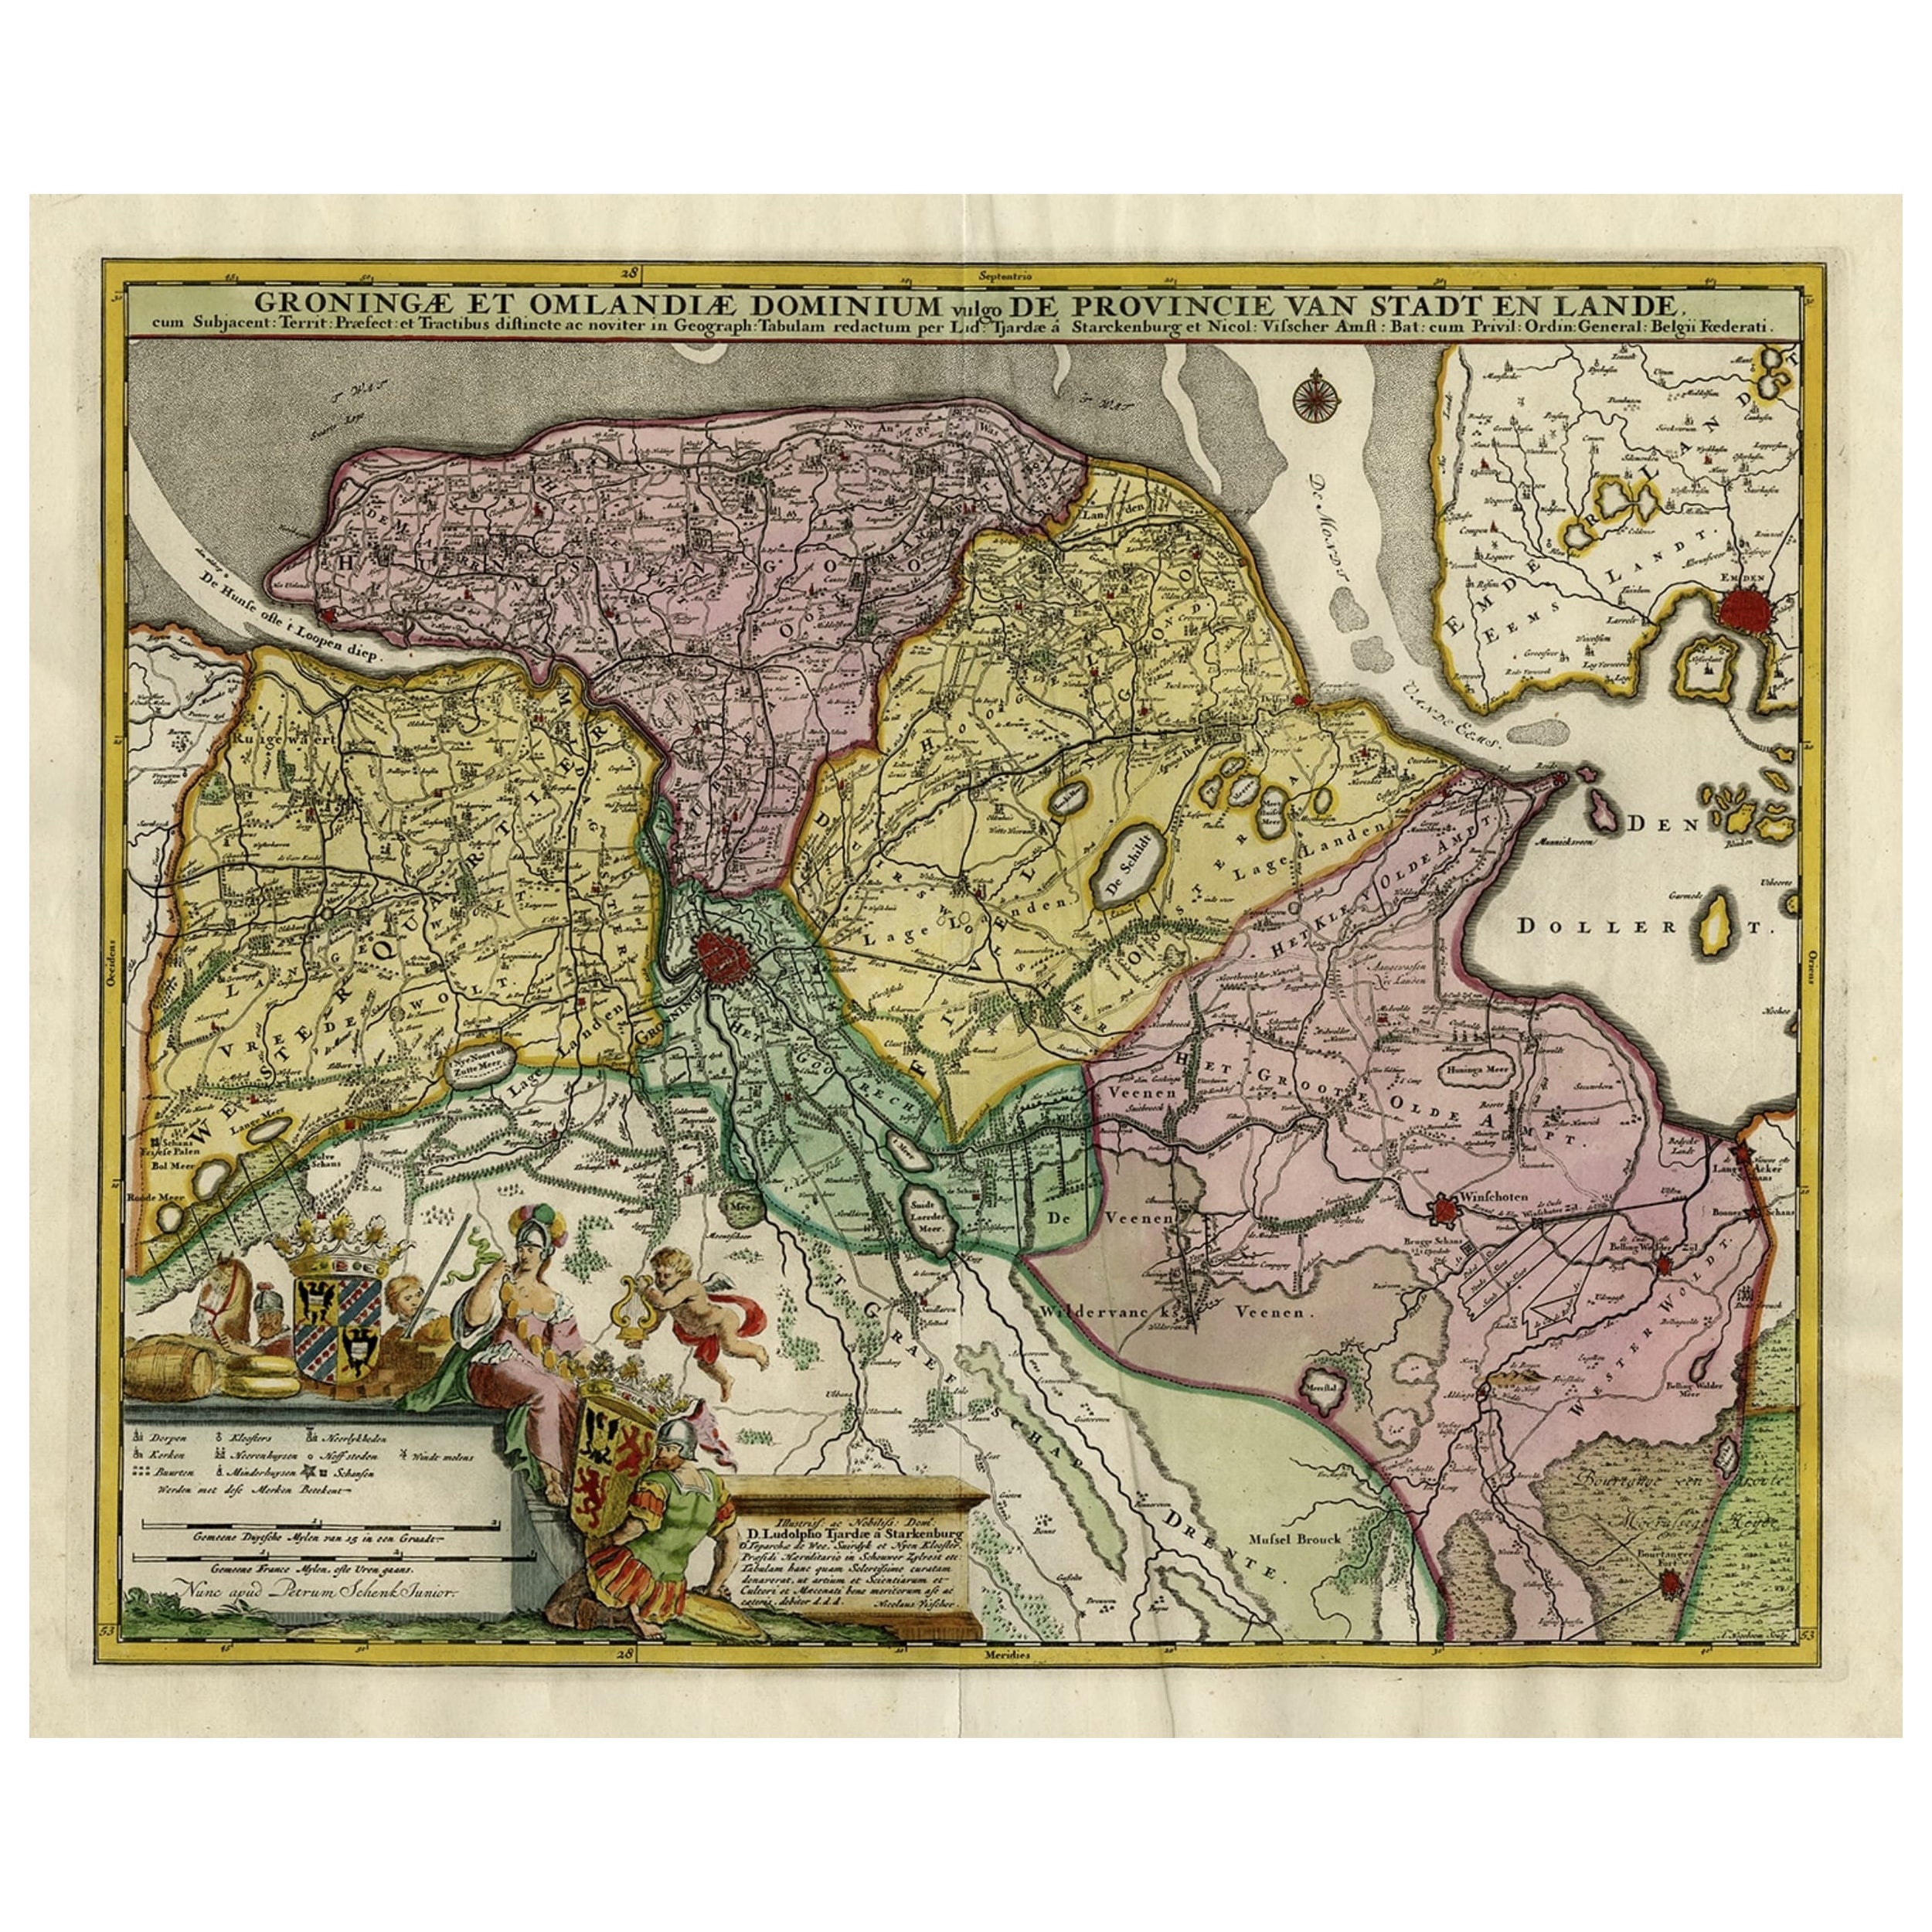 Dekorative, handkolorierte antike Karte von Groningen in den Niederlanden, ca. 1730